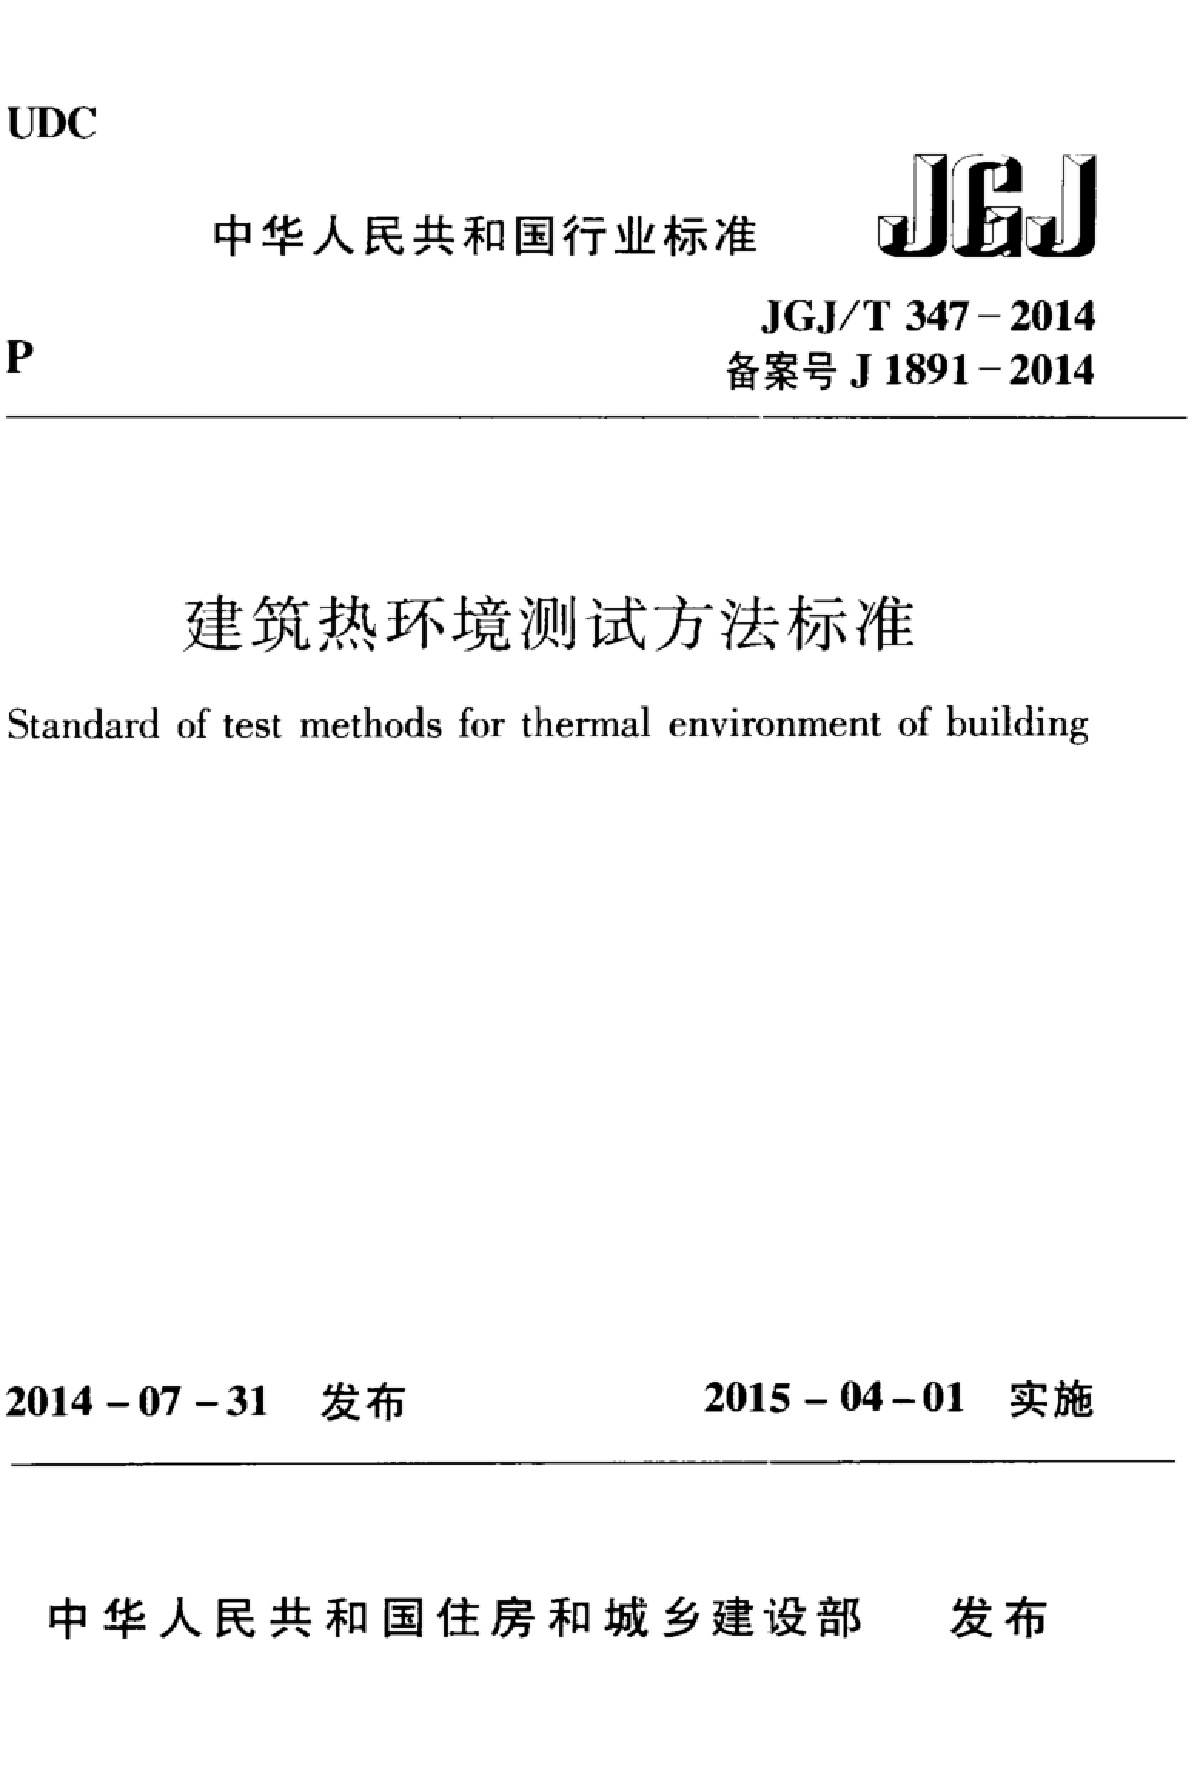 JGJT347-2014 建筑热环境测试方法标准-图一